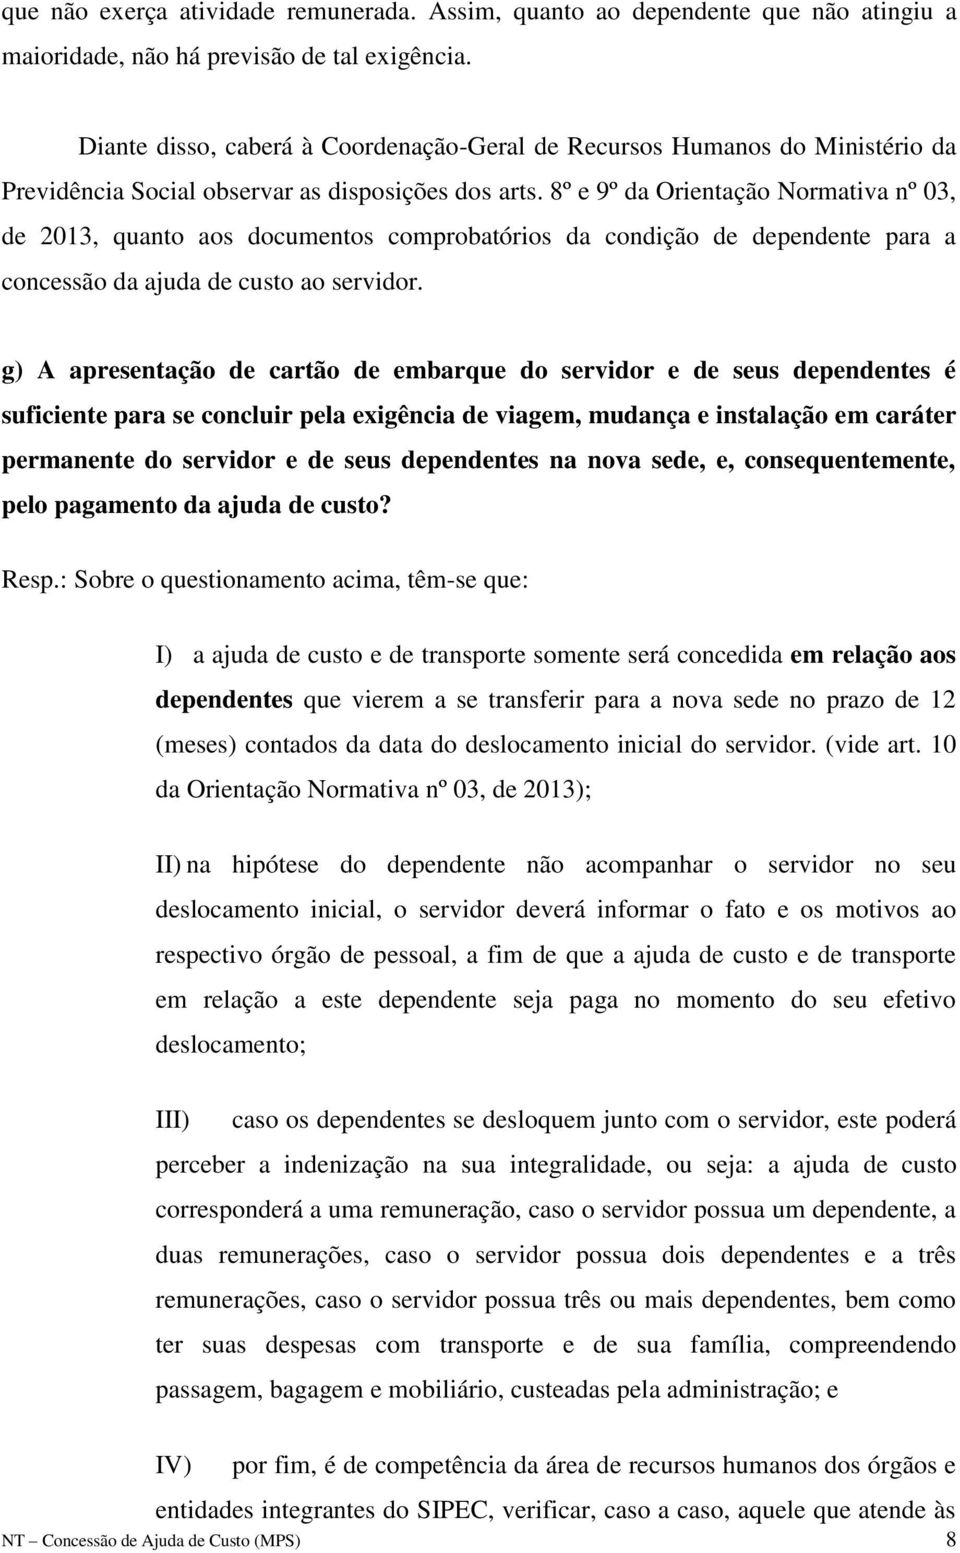 8º e 9º da Orientação Normativa nº 03, de 2013, quanto aos documentos comprobatórios da condição de dependente para a concessão da ajuda de custo ao servidor.